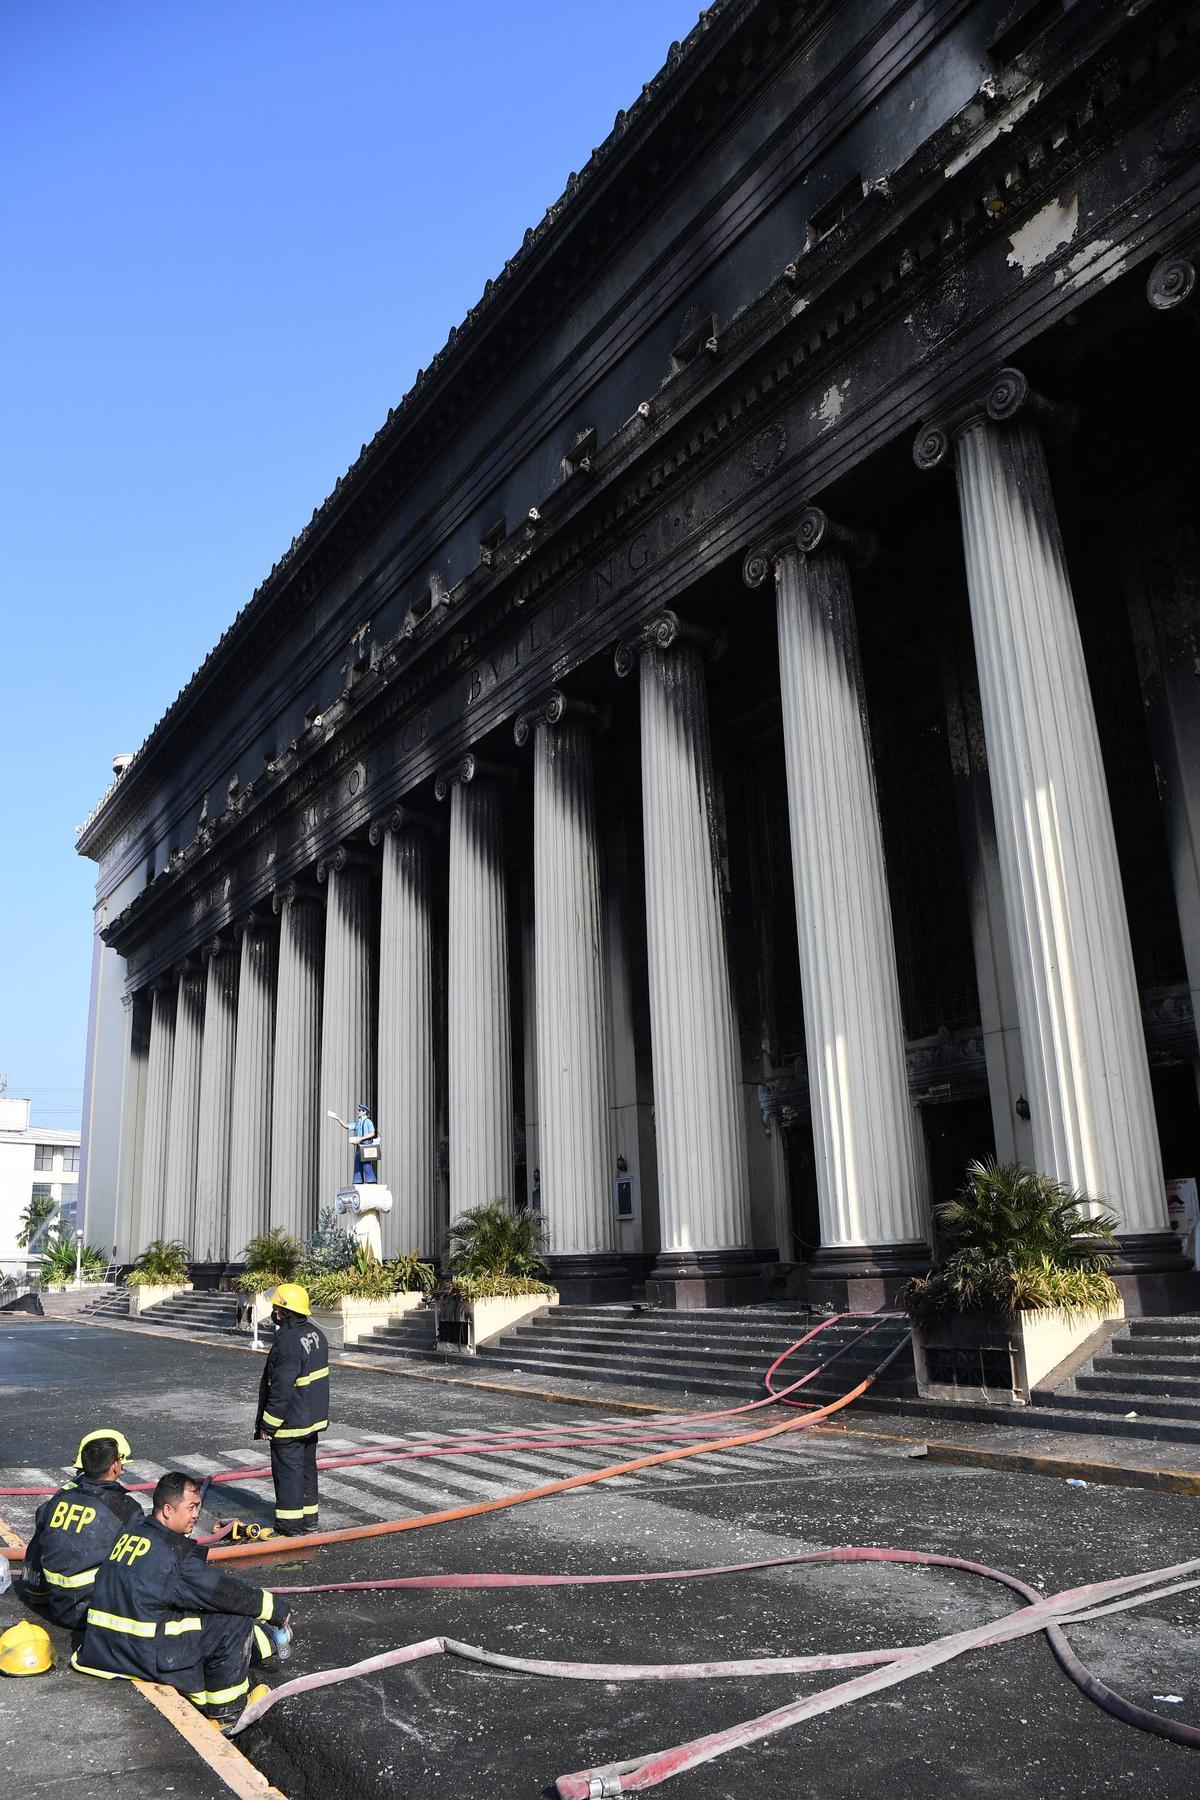 Espectacular incencio en la histórica oficina de Correos de Manila